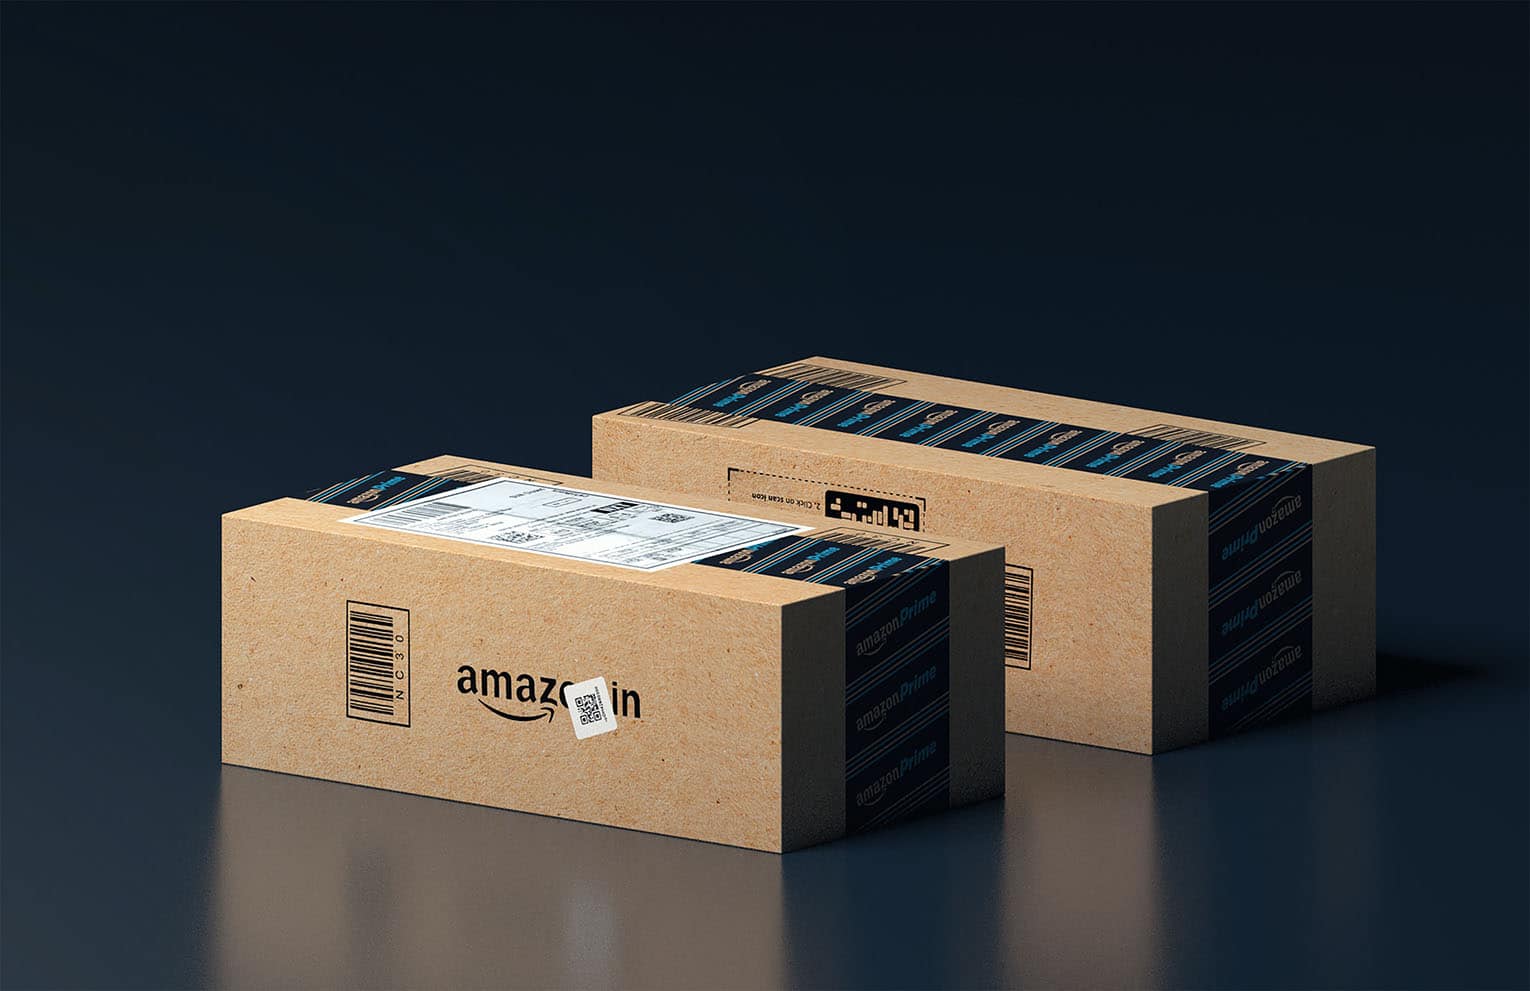 Amazon Hero Image; Two Amazon Packages